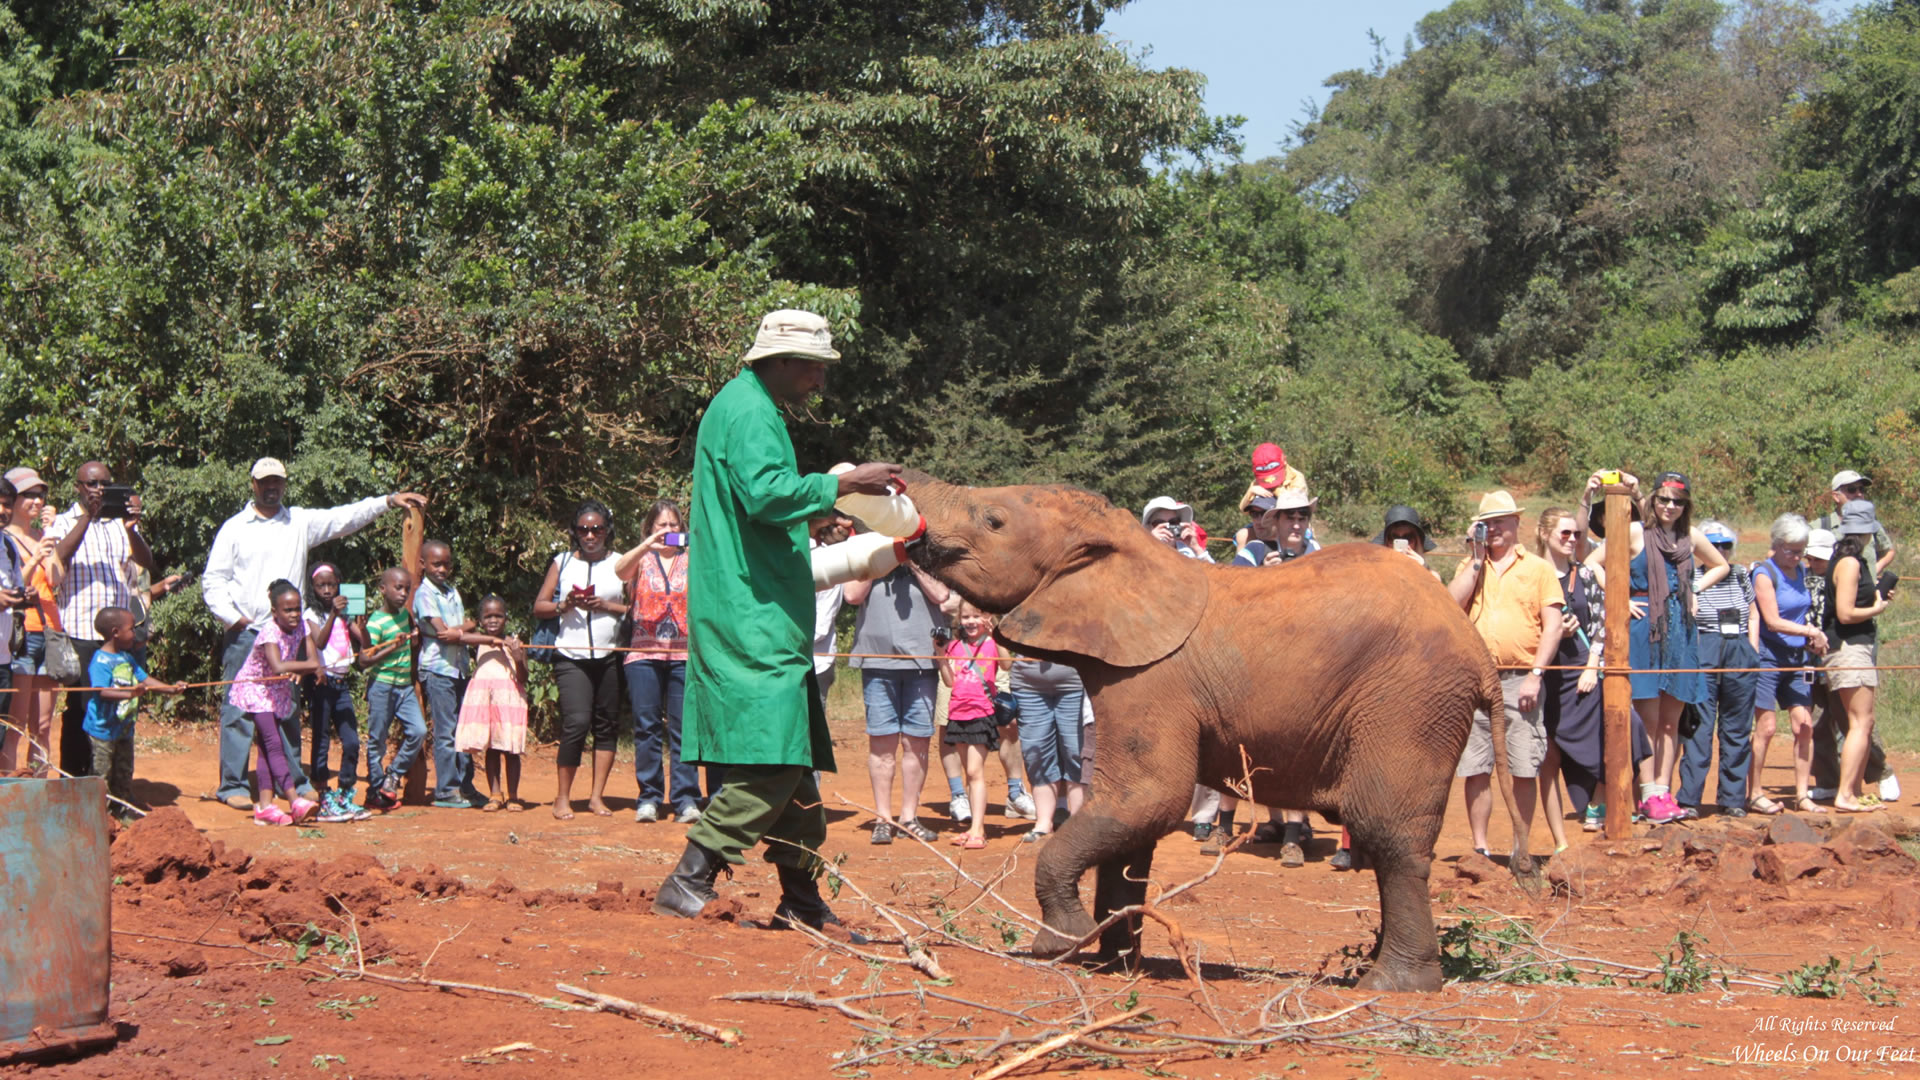 nairobi national park & david shedricks elephant orphanage